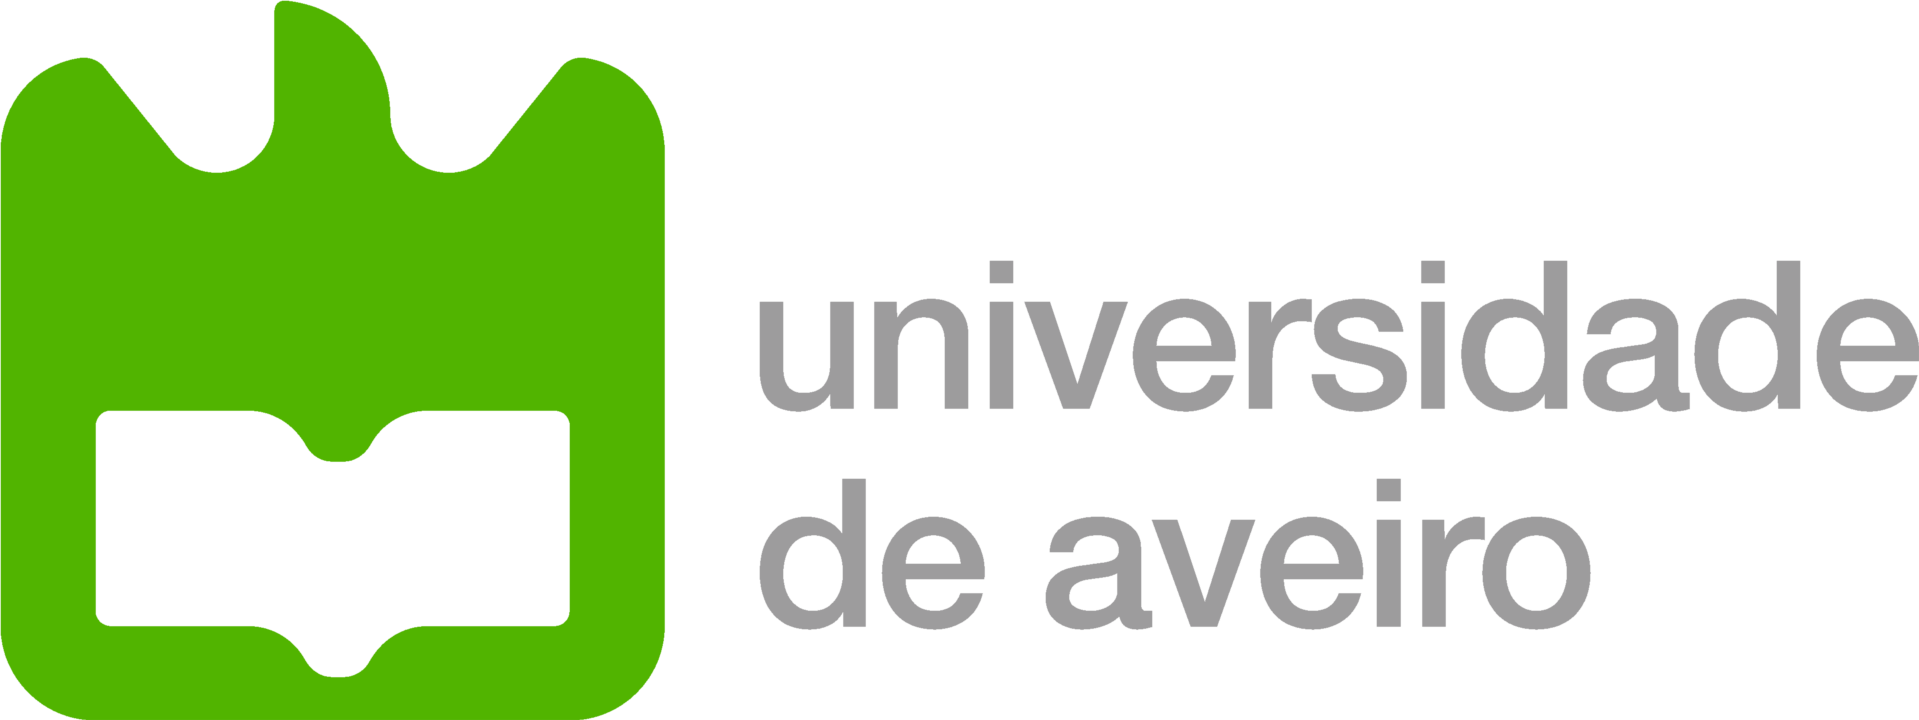 Parceria: Universidade de Aveiro